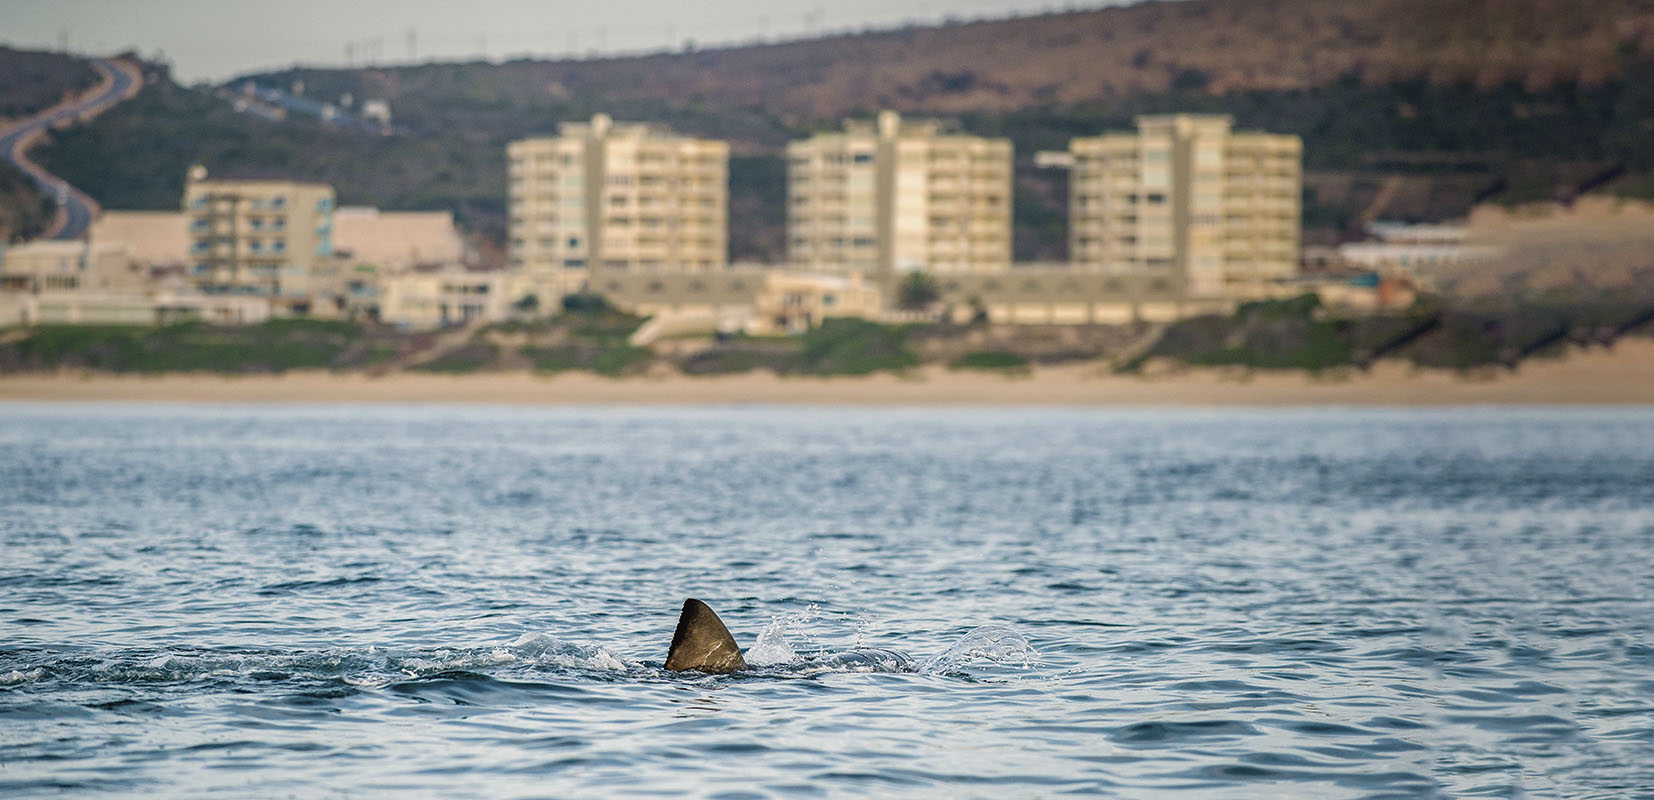 Este verano son más de 30 los avistamientos de tiburones en nuestras playas, lo que ha generado alarma entre los bañistas